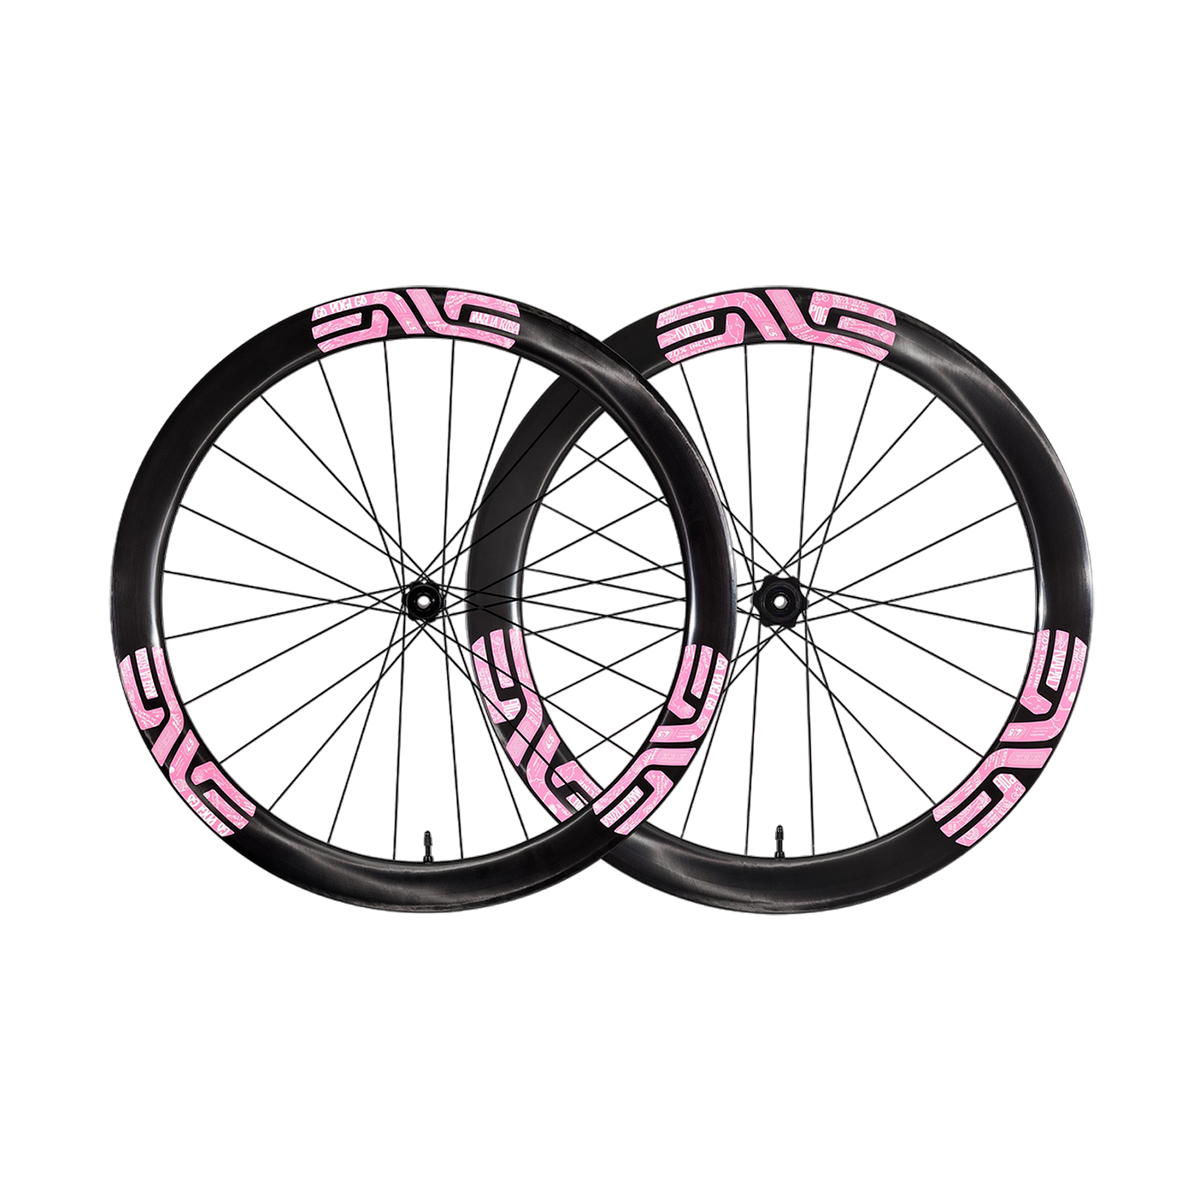 Laufradsatz ENVE SES 4.5 Pogacar Limited Edition - Pink